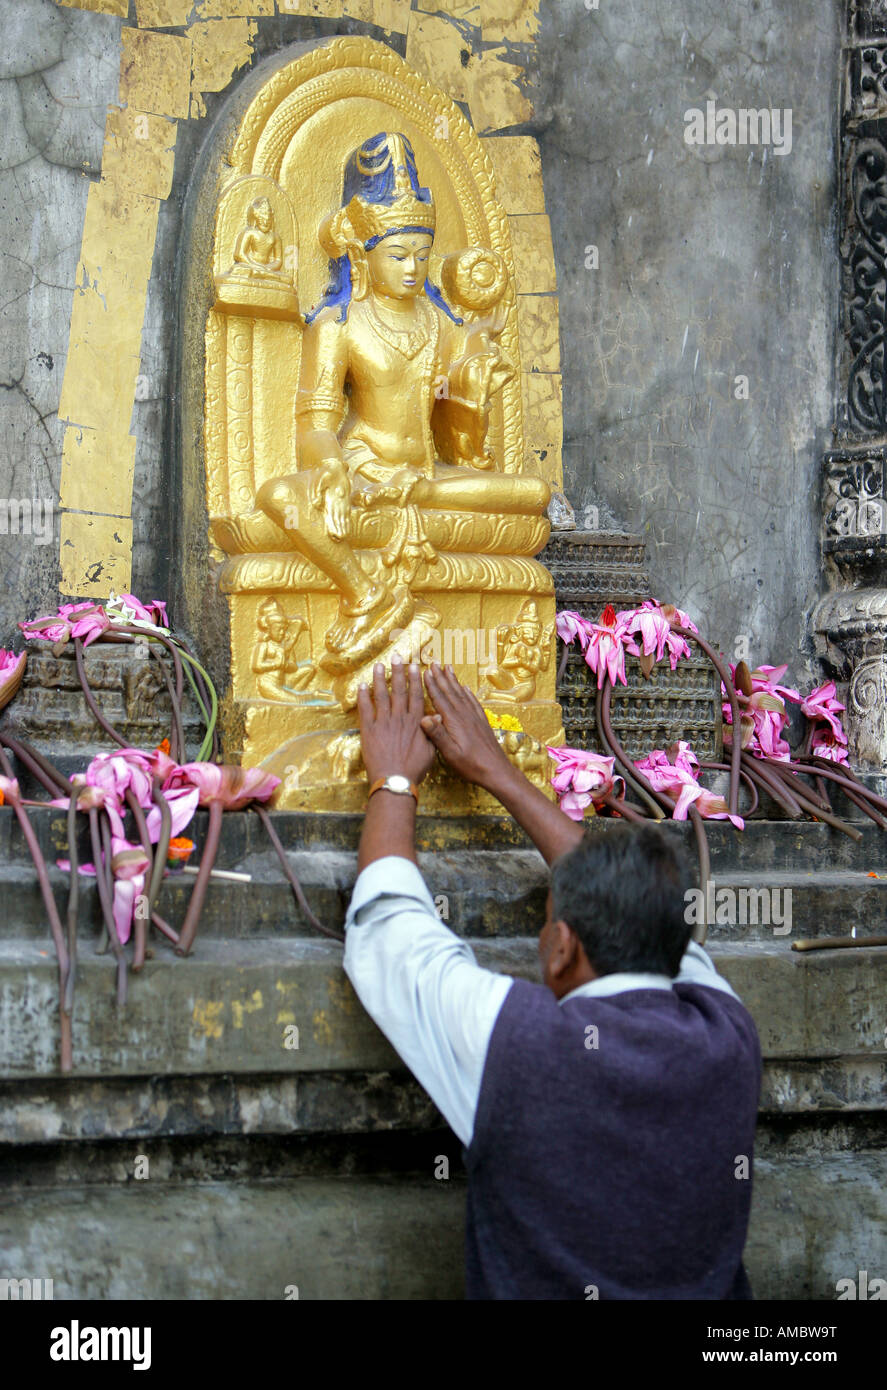 L'Inde, Bodhgaya : pèlerins bouddhistes à l'ensemble du temple de la Mahabodhi à Bodhgaya, le lieu de l'Eveil du Bouddha Banque D'Images